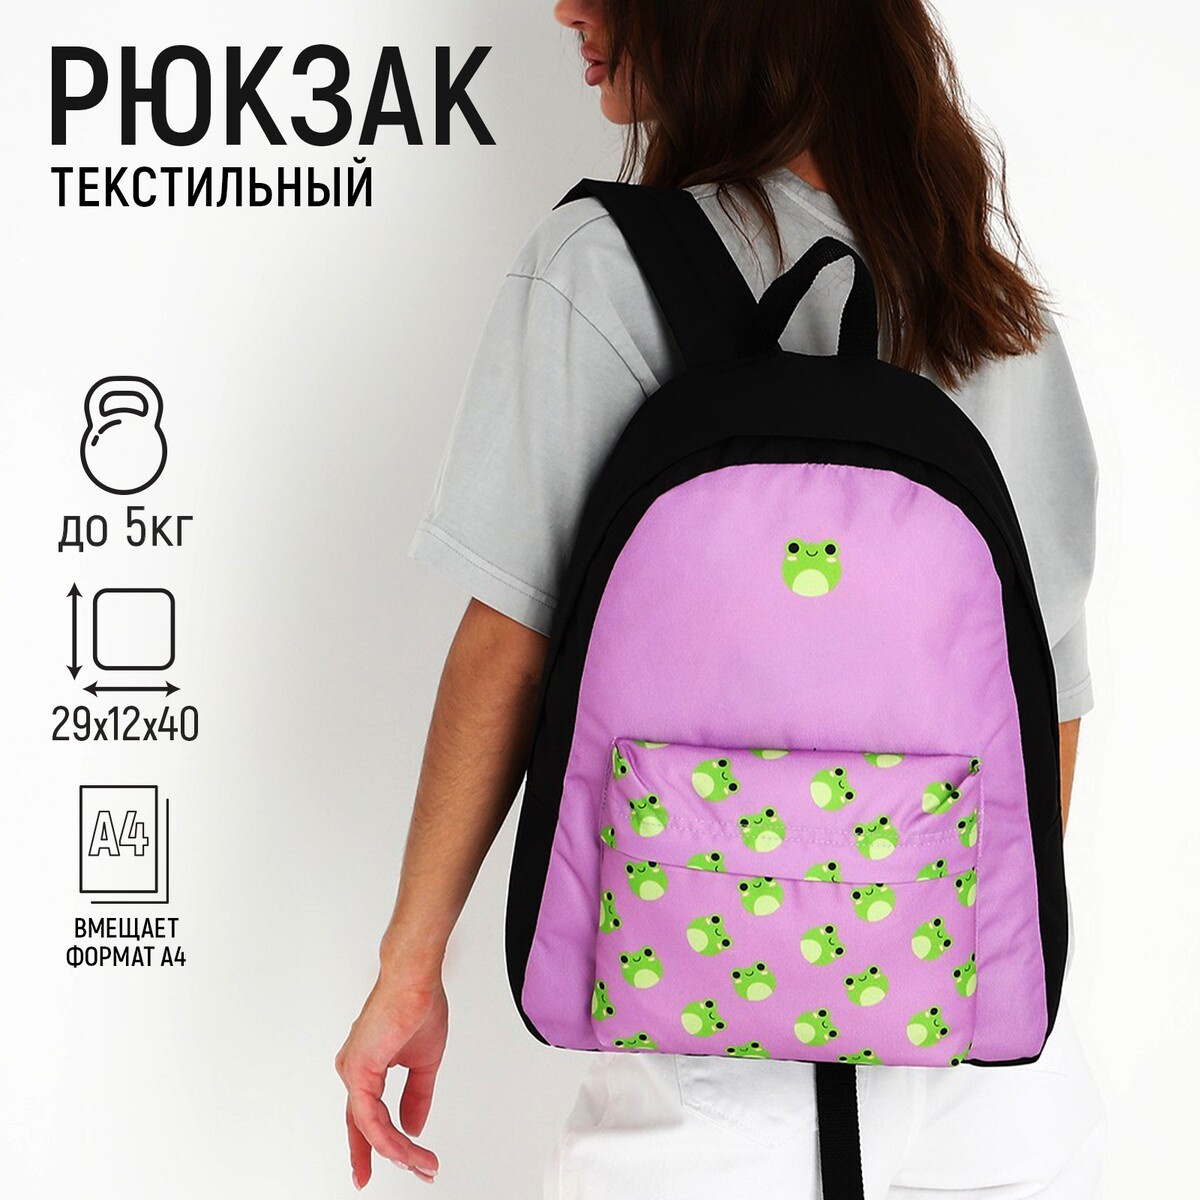 Рюкзак текстильный лягушки, с карманом, 29х12х40 фиолетовый рюкзак с карманом 22 см х 10 см х 30 см